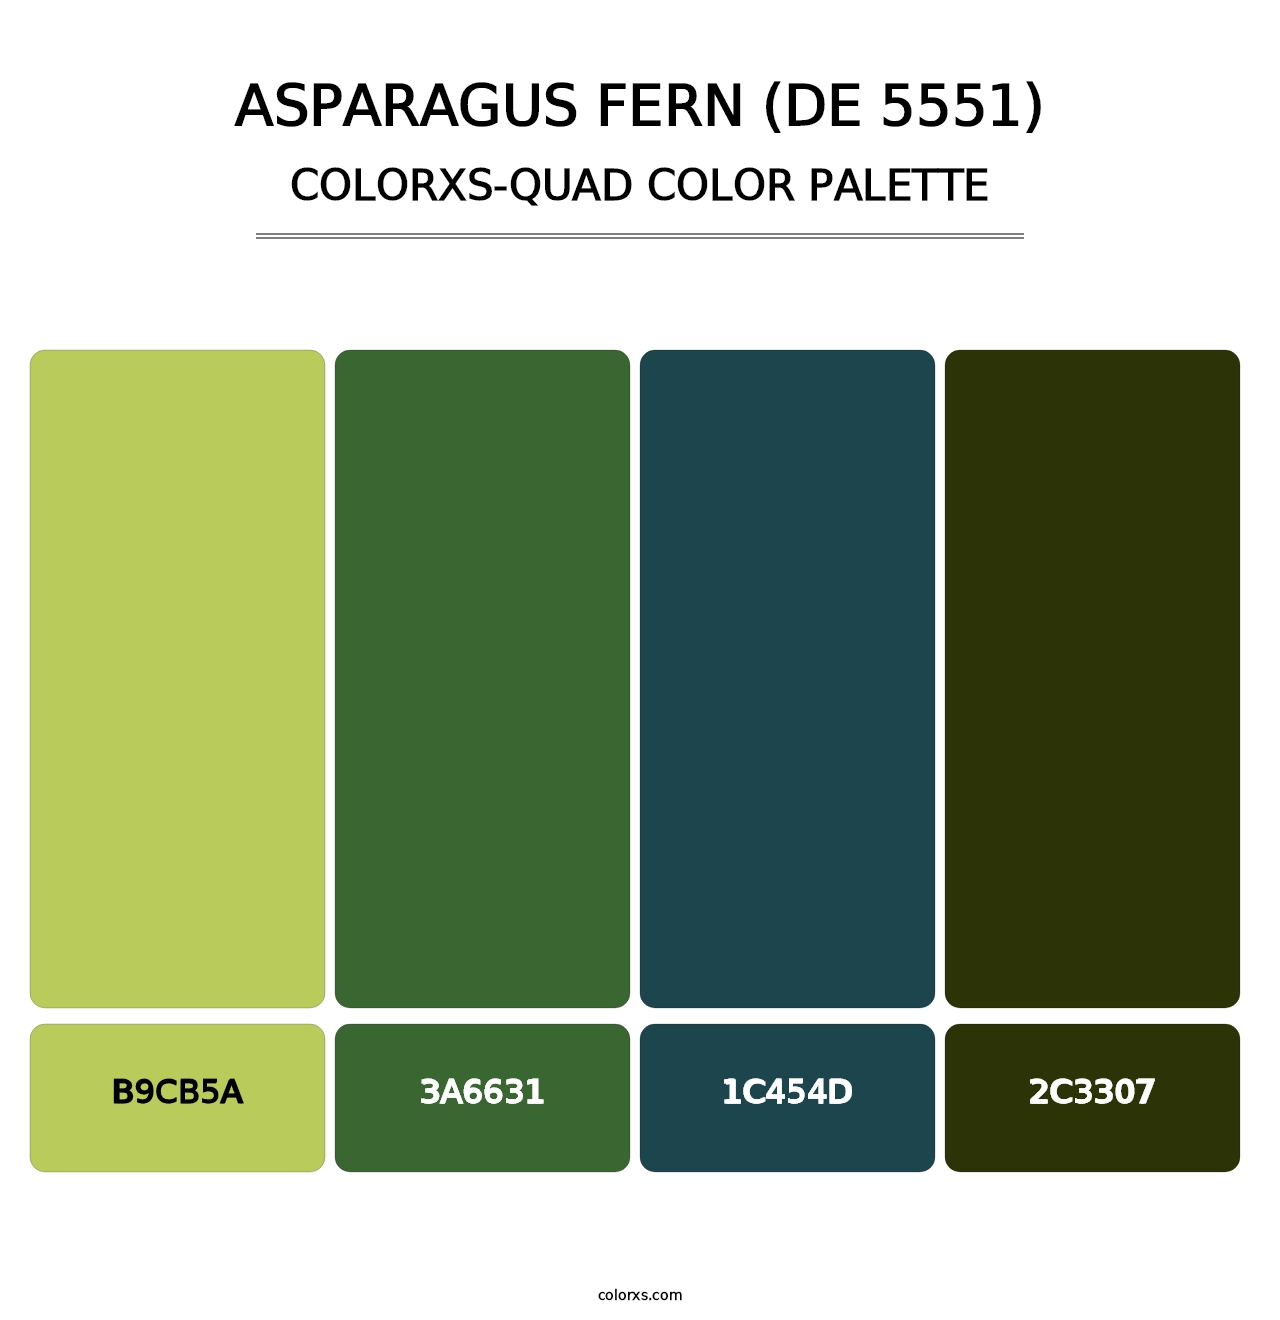 Asparagus Fern (DE 5551) - Colorxs Quad Palette